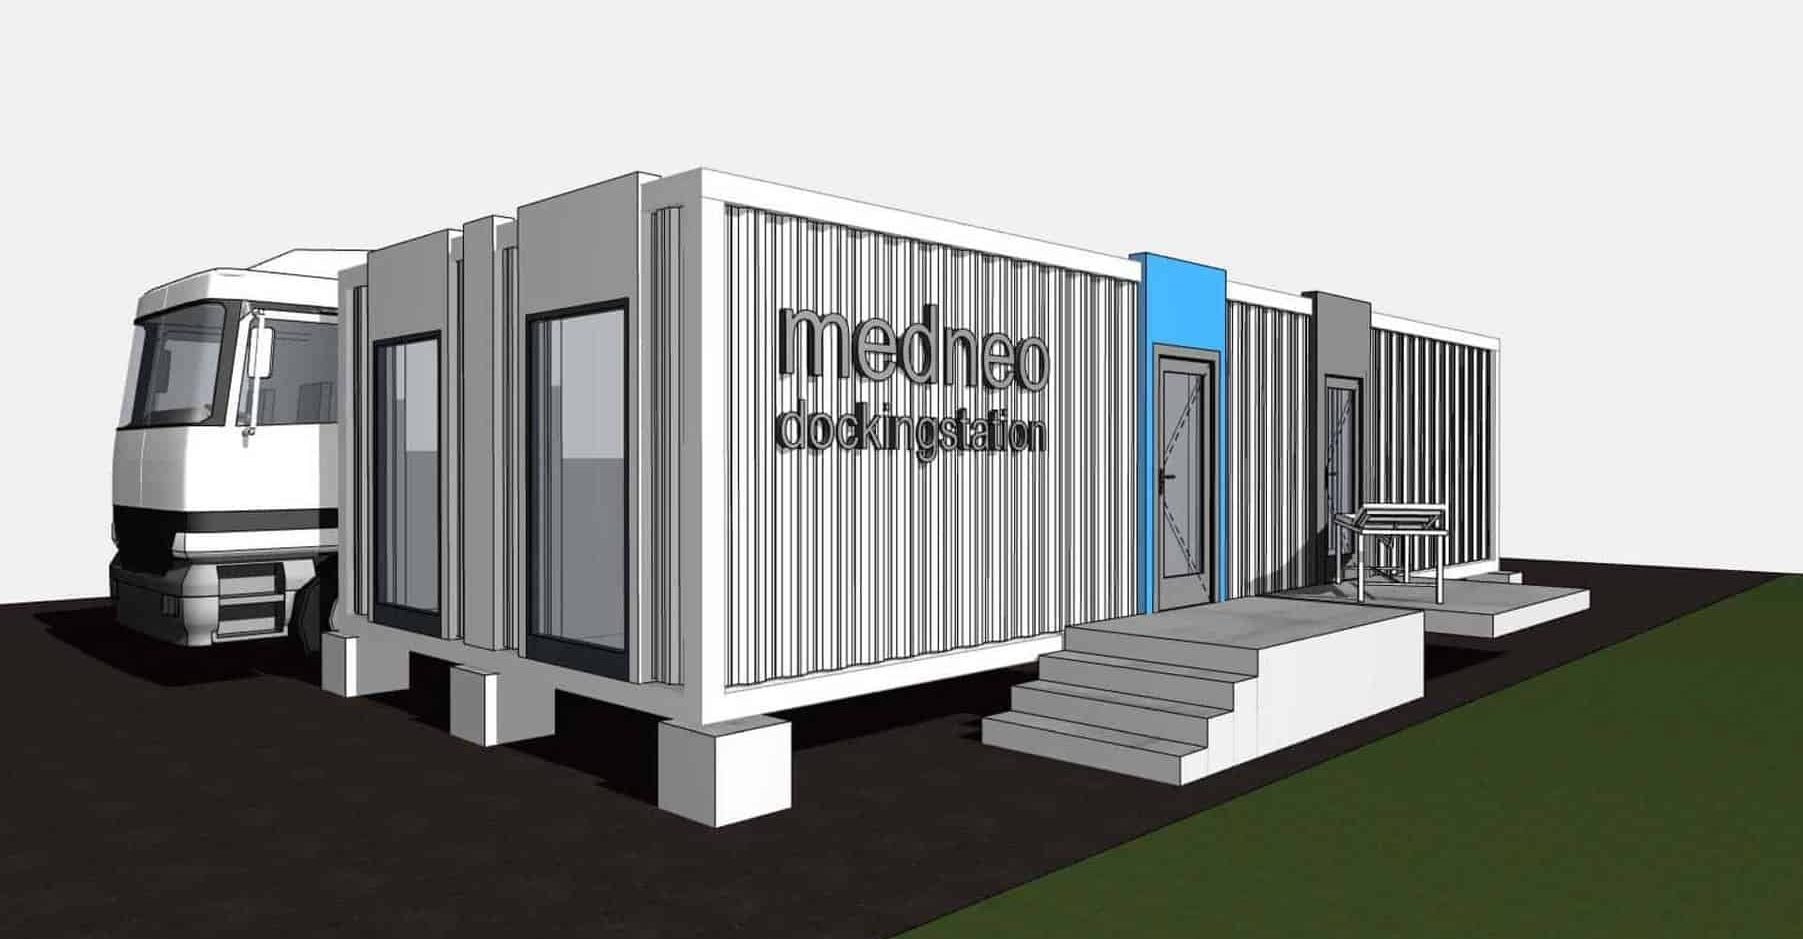 medneo Dockingstation, medneo GmbH, Konzeptentwicklung, Architektur, Referenz, Berlin, MRT, mobile Radiologie, Seecontainer